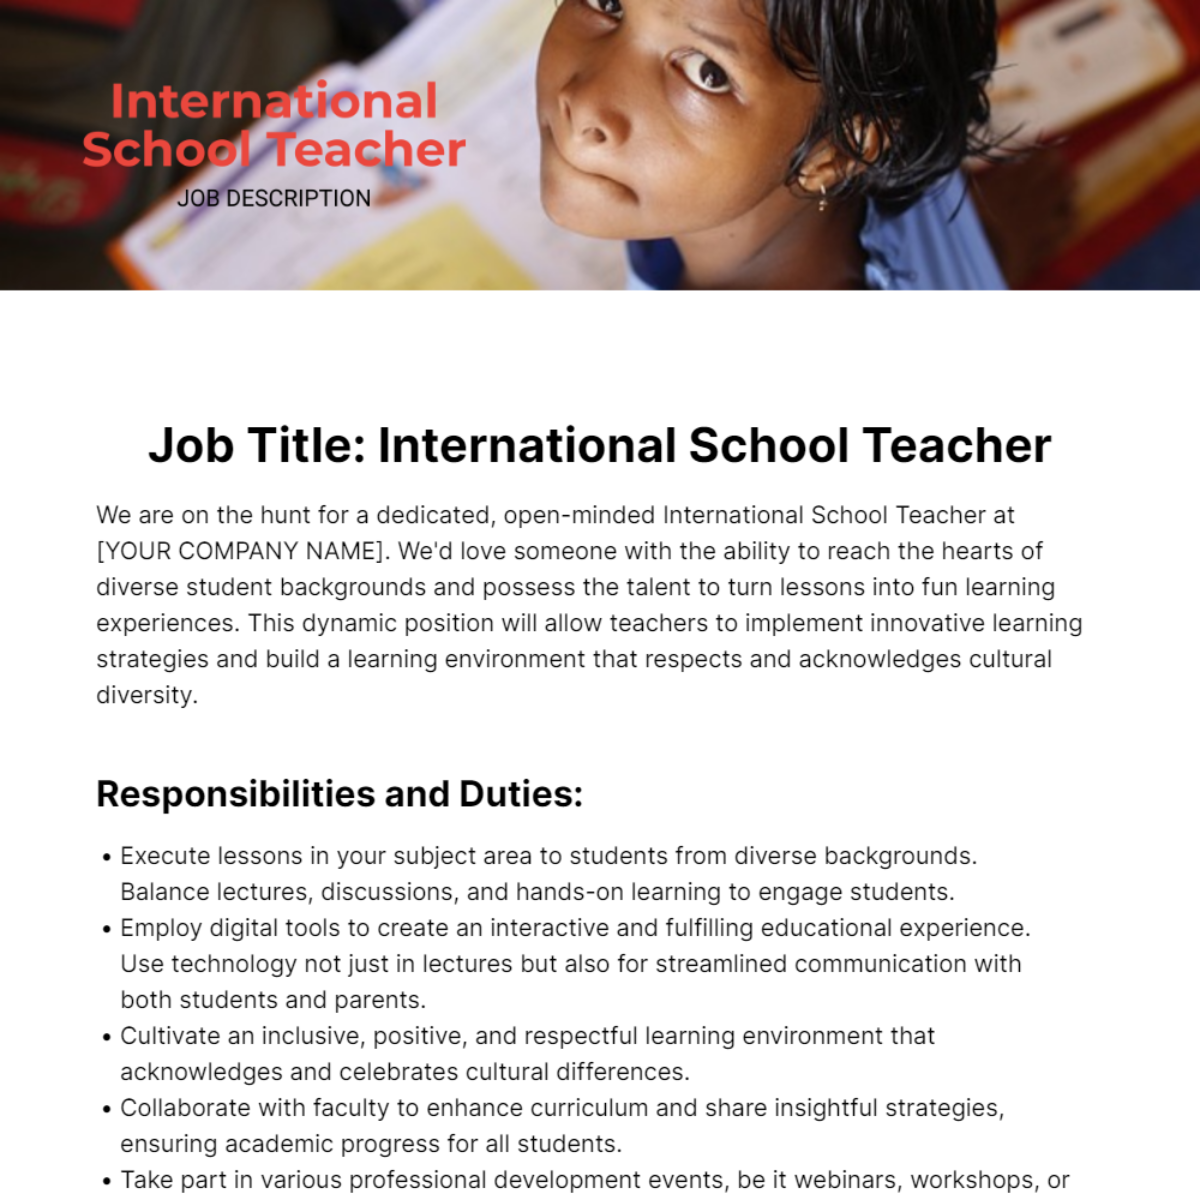 International School Teacher Job Description Template